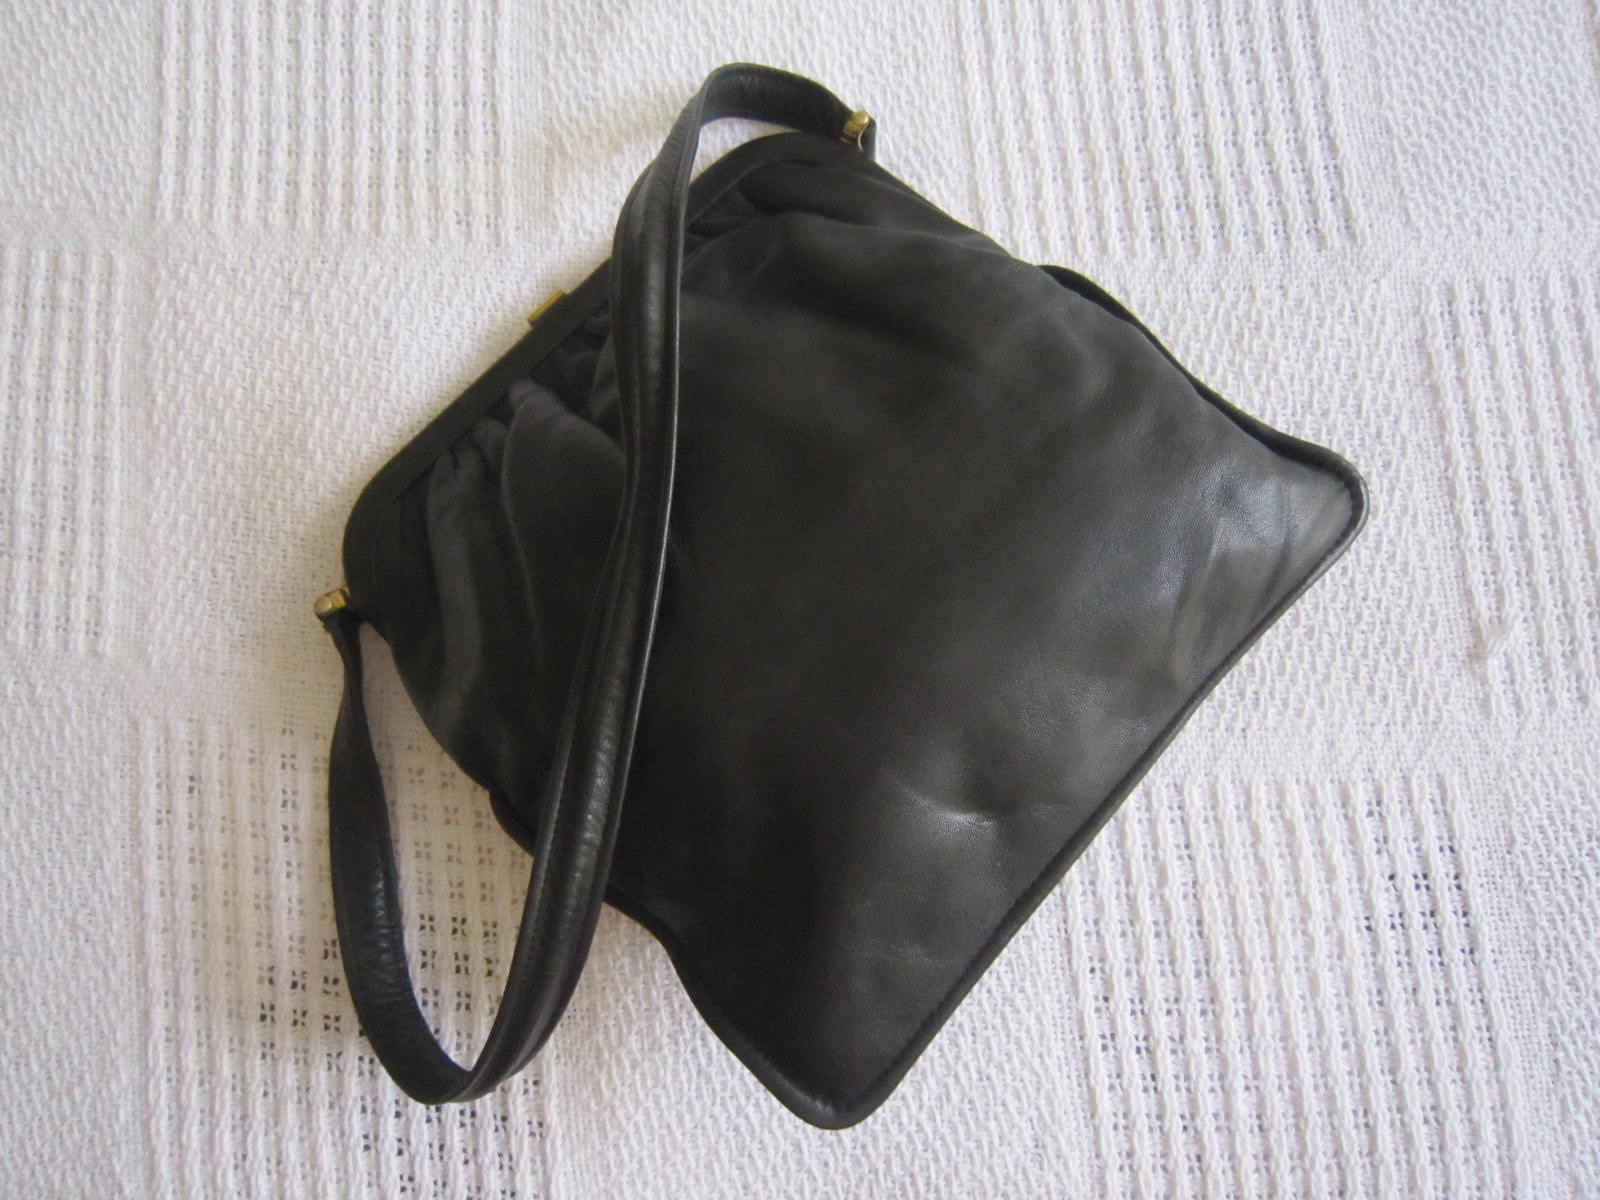 Vintage Black Leather Kiss-lock Shoulder Bag